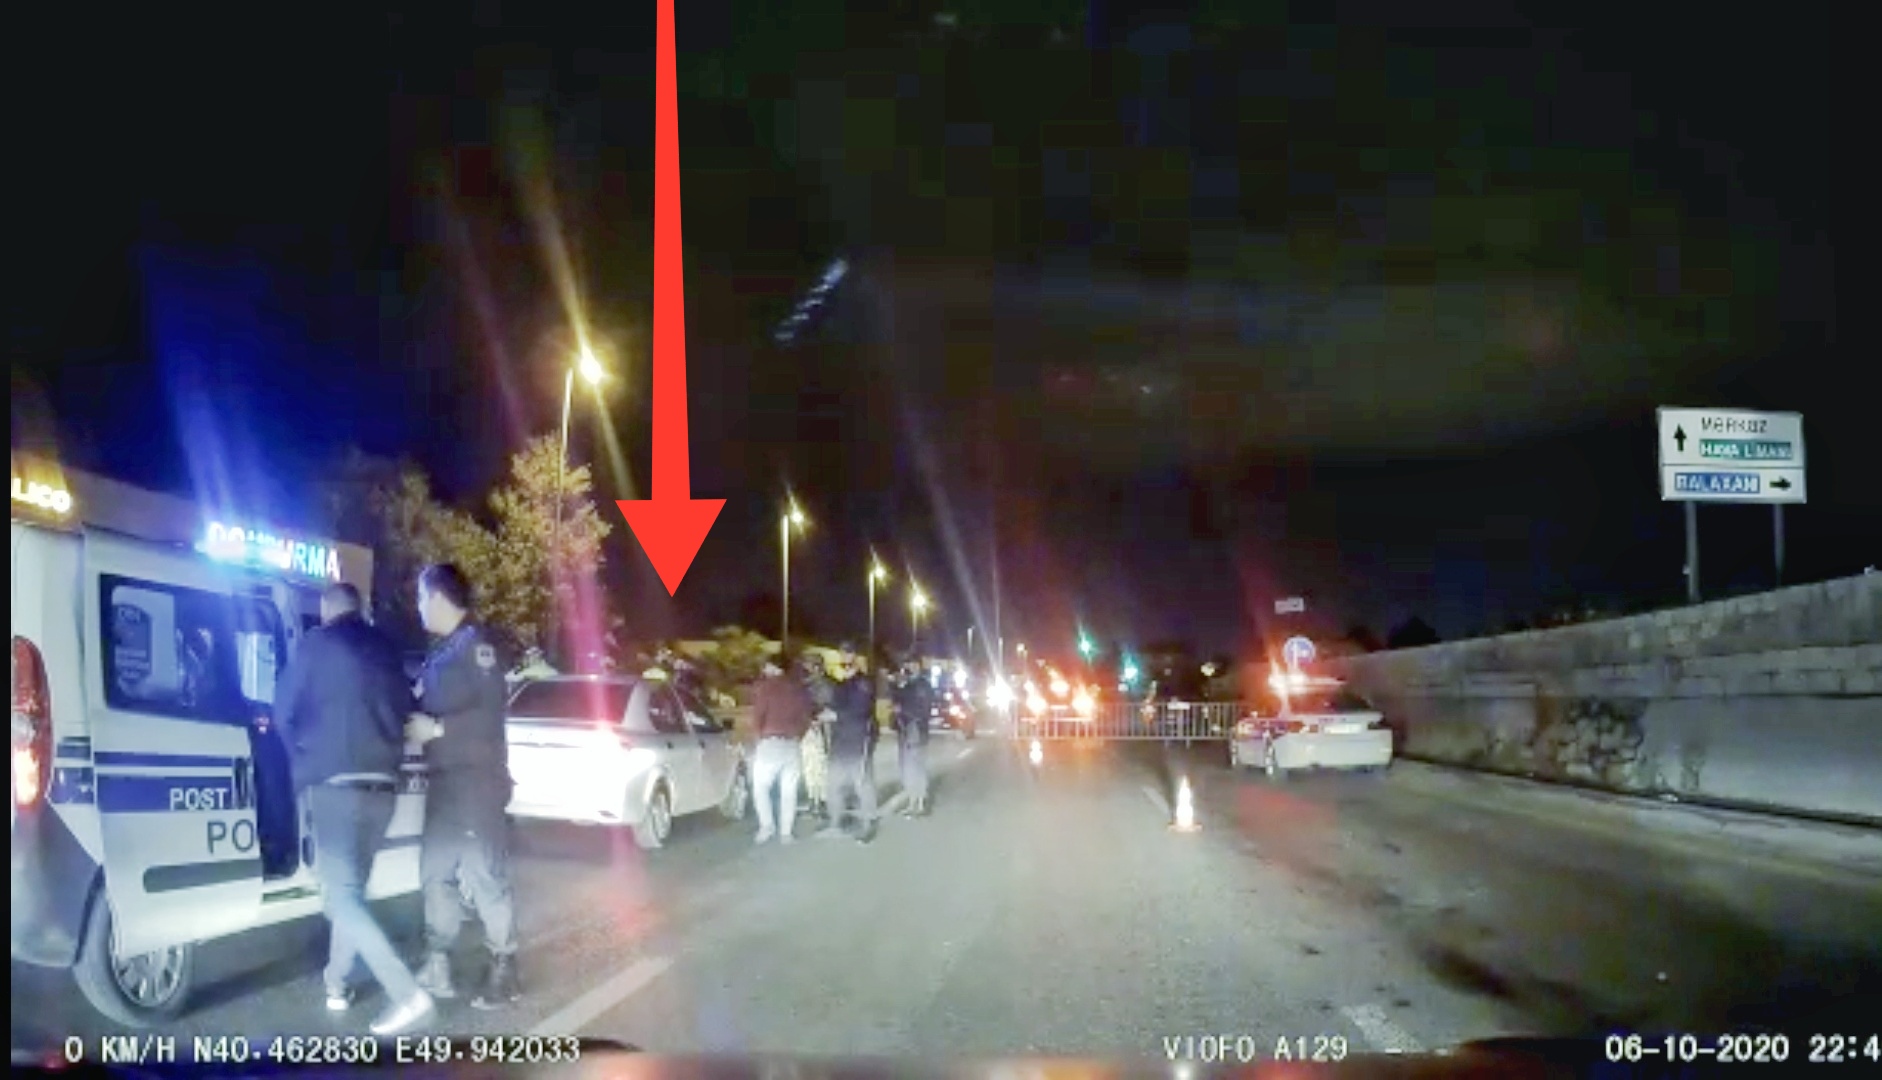 Bakıda polisdən qaçan sürücü bu cür yaxalandı:  Film kimi hadisə - VİDEO 